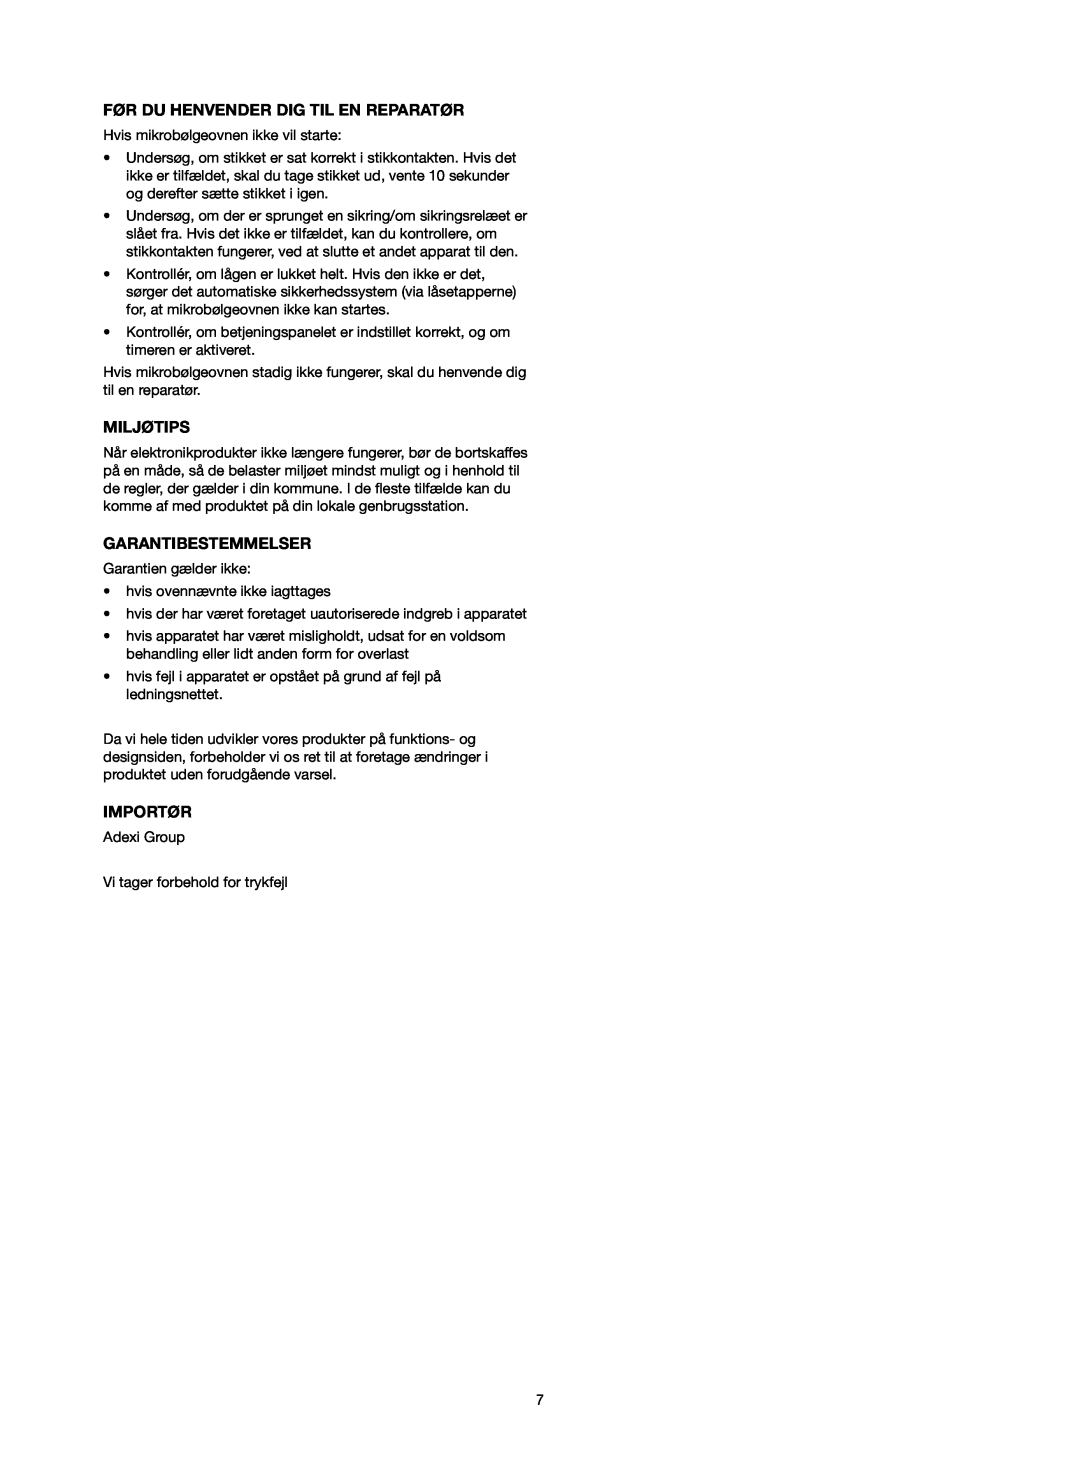 Melissa 753-093 manual Før Du Henvender Dig Til En Reparatør, Miljøtips, Garantibestemmelser, Importør 